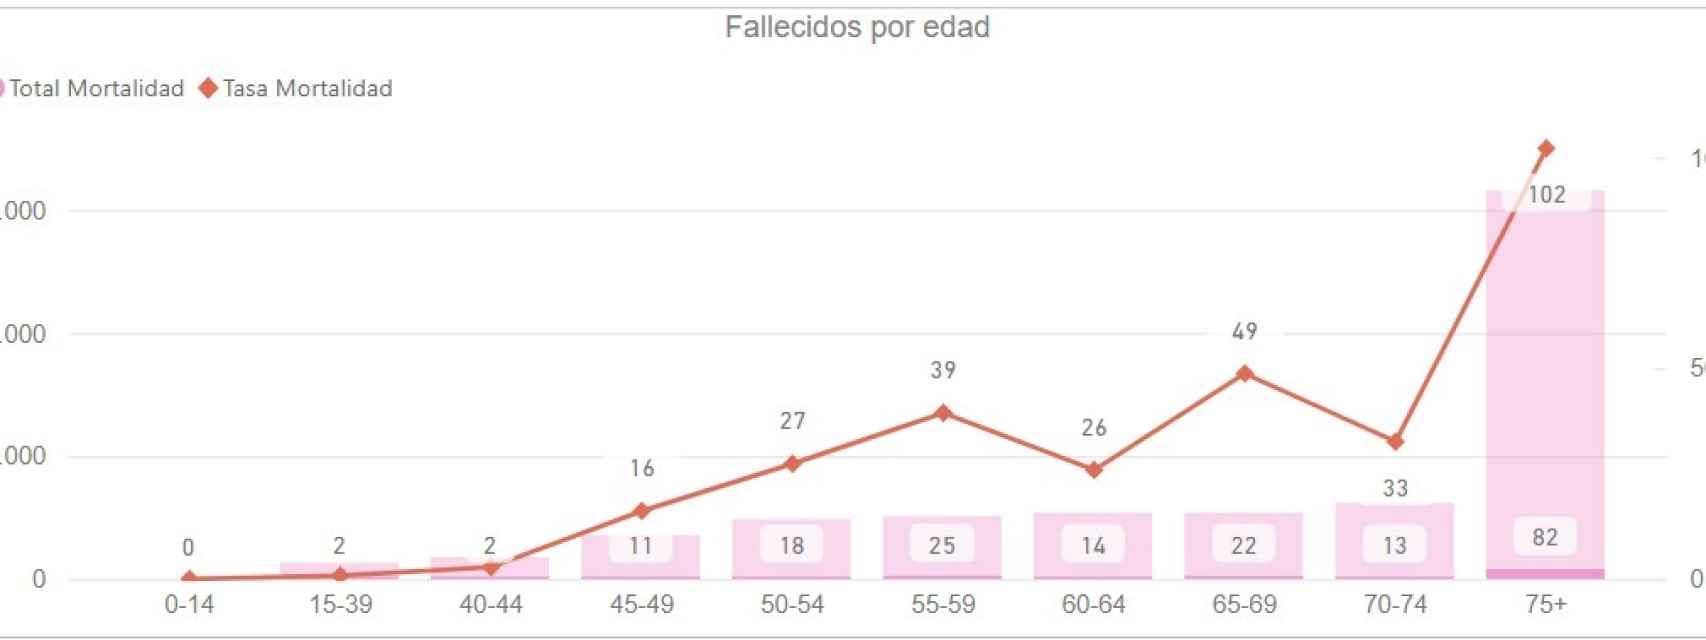 Fallecidos por edad en la provincia de Málaga por cáncer de mama en 2021